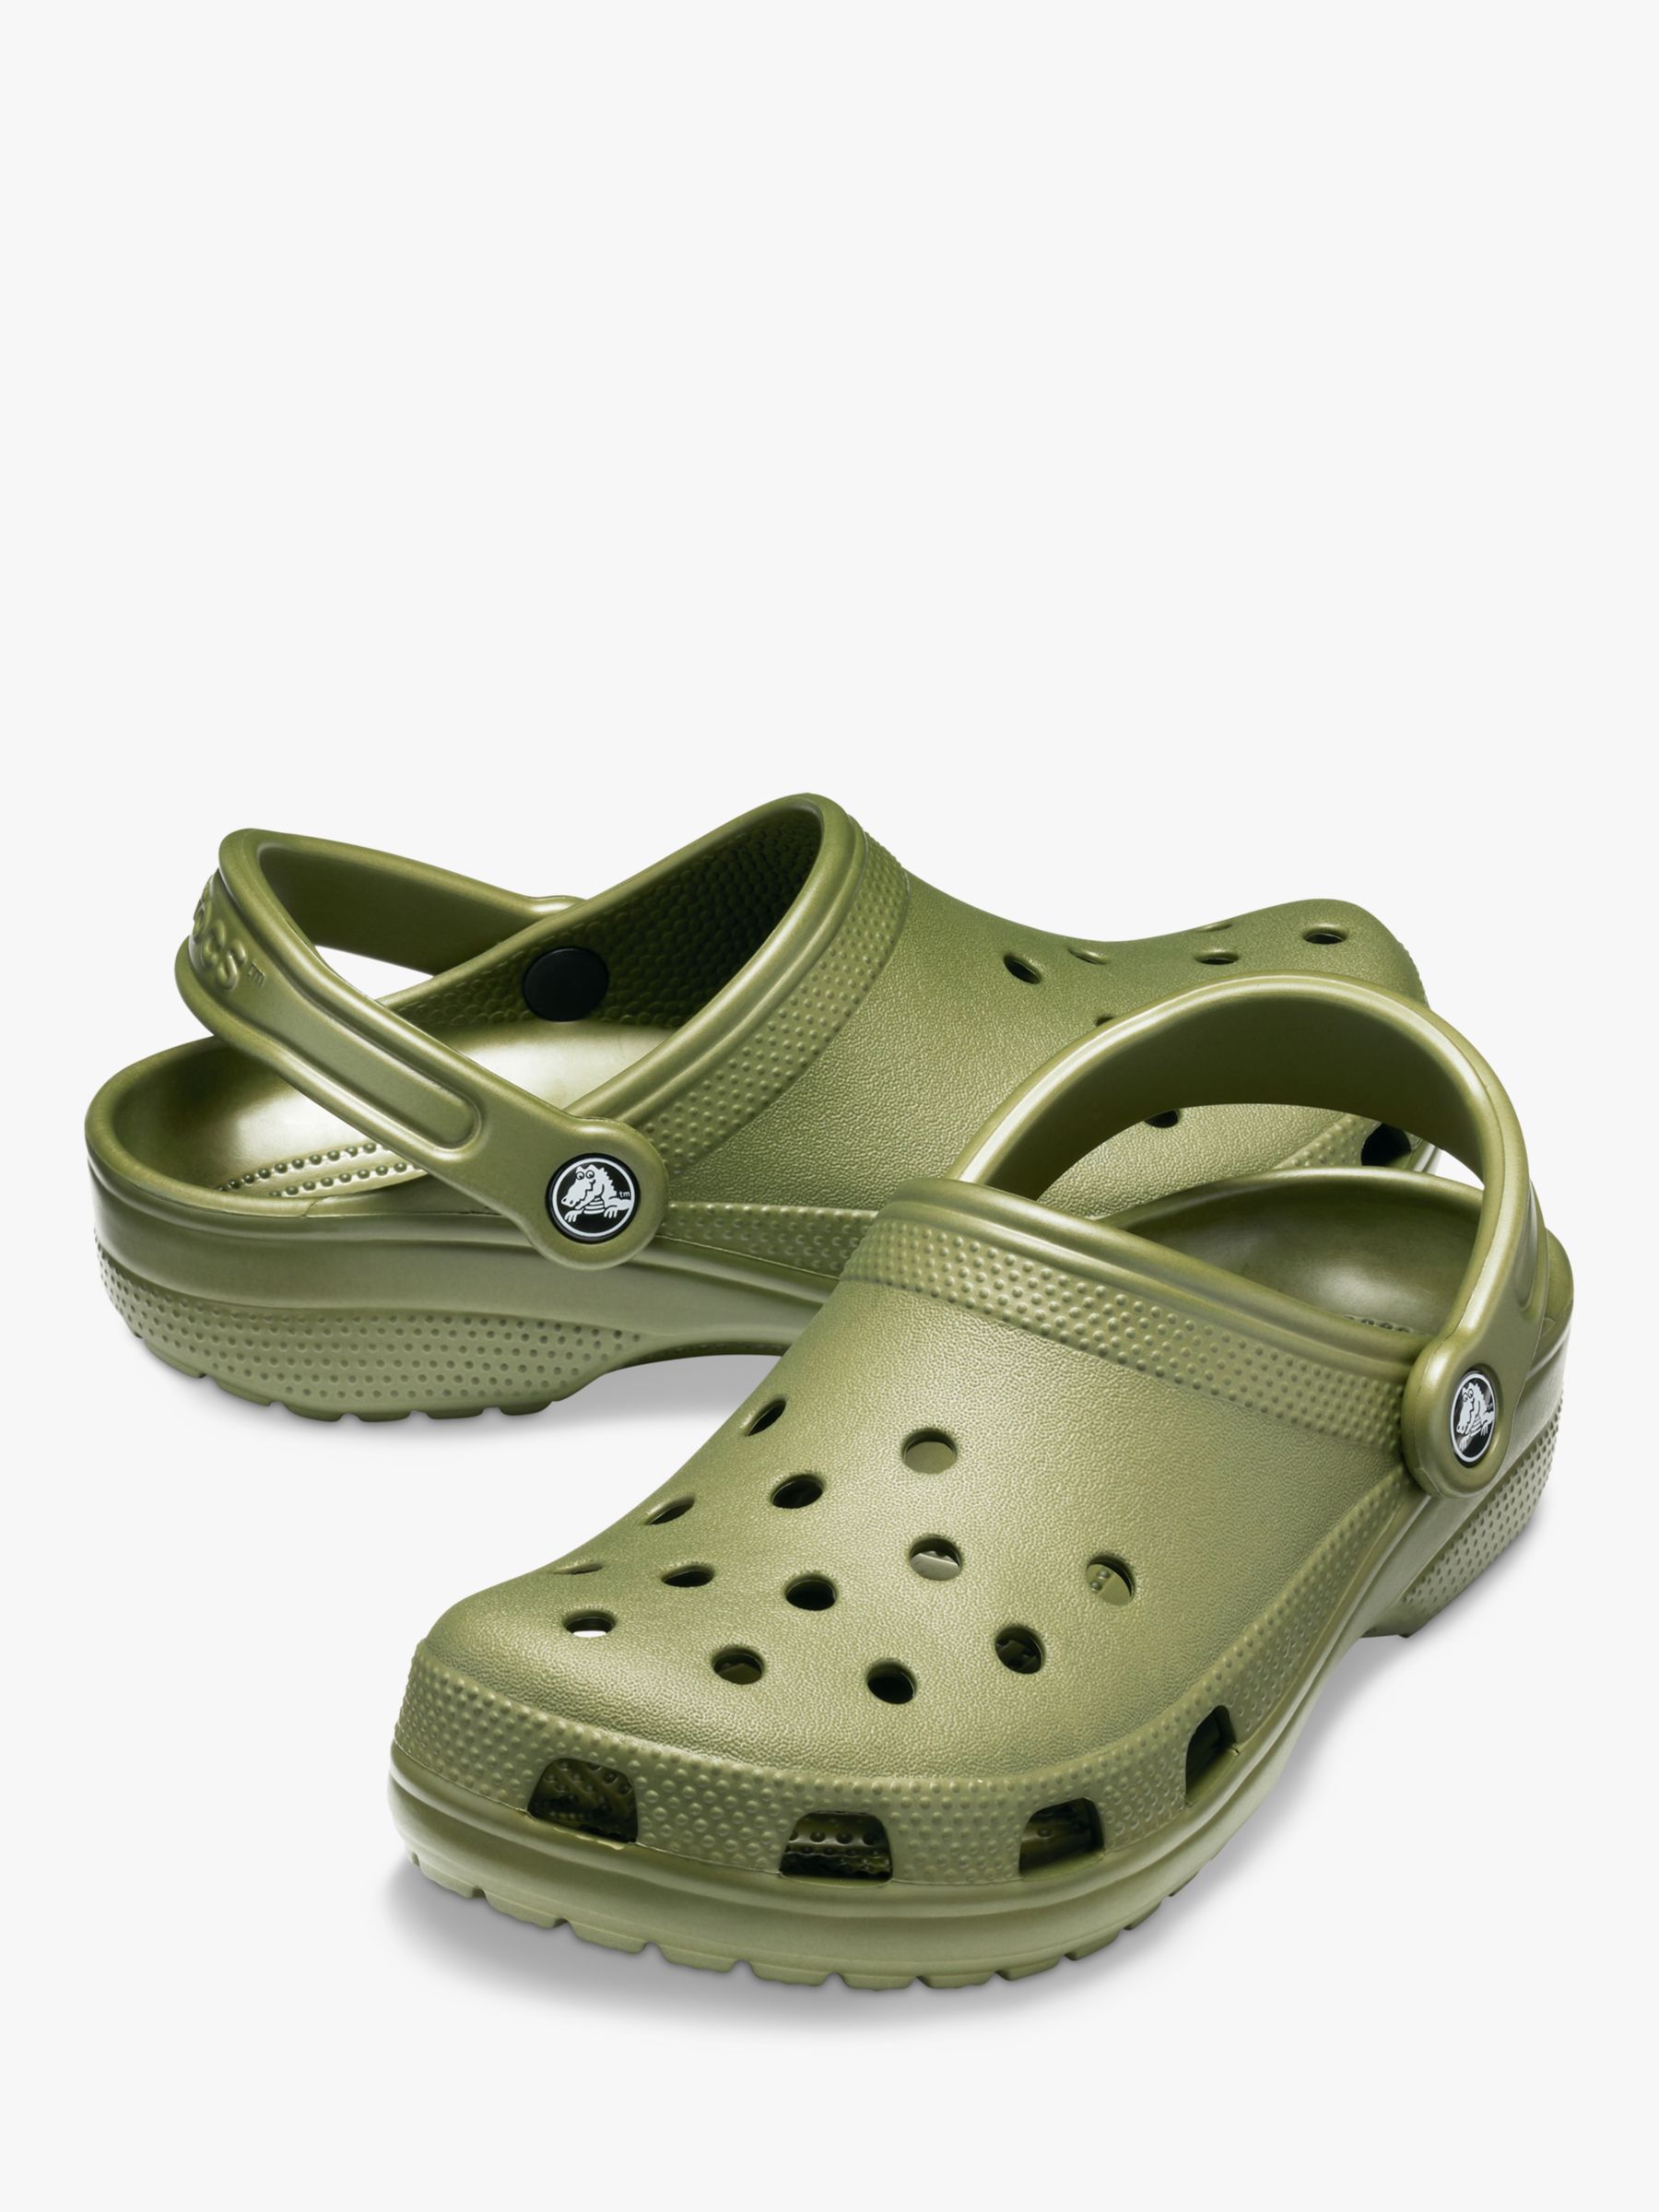 Custom Classic Designer Crocs